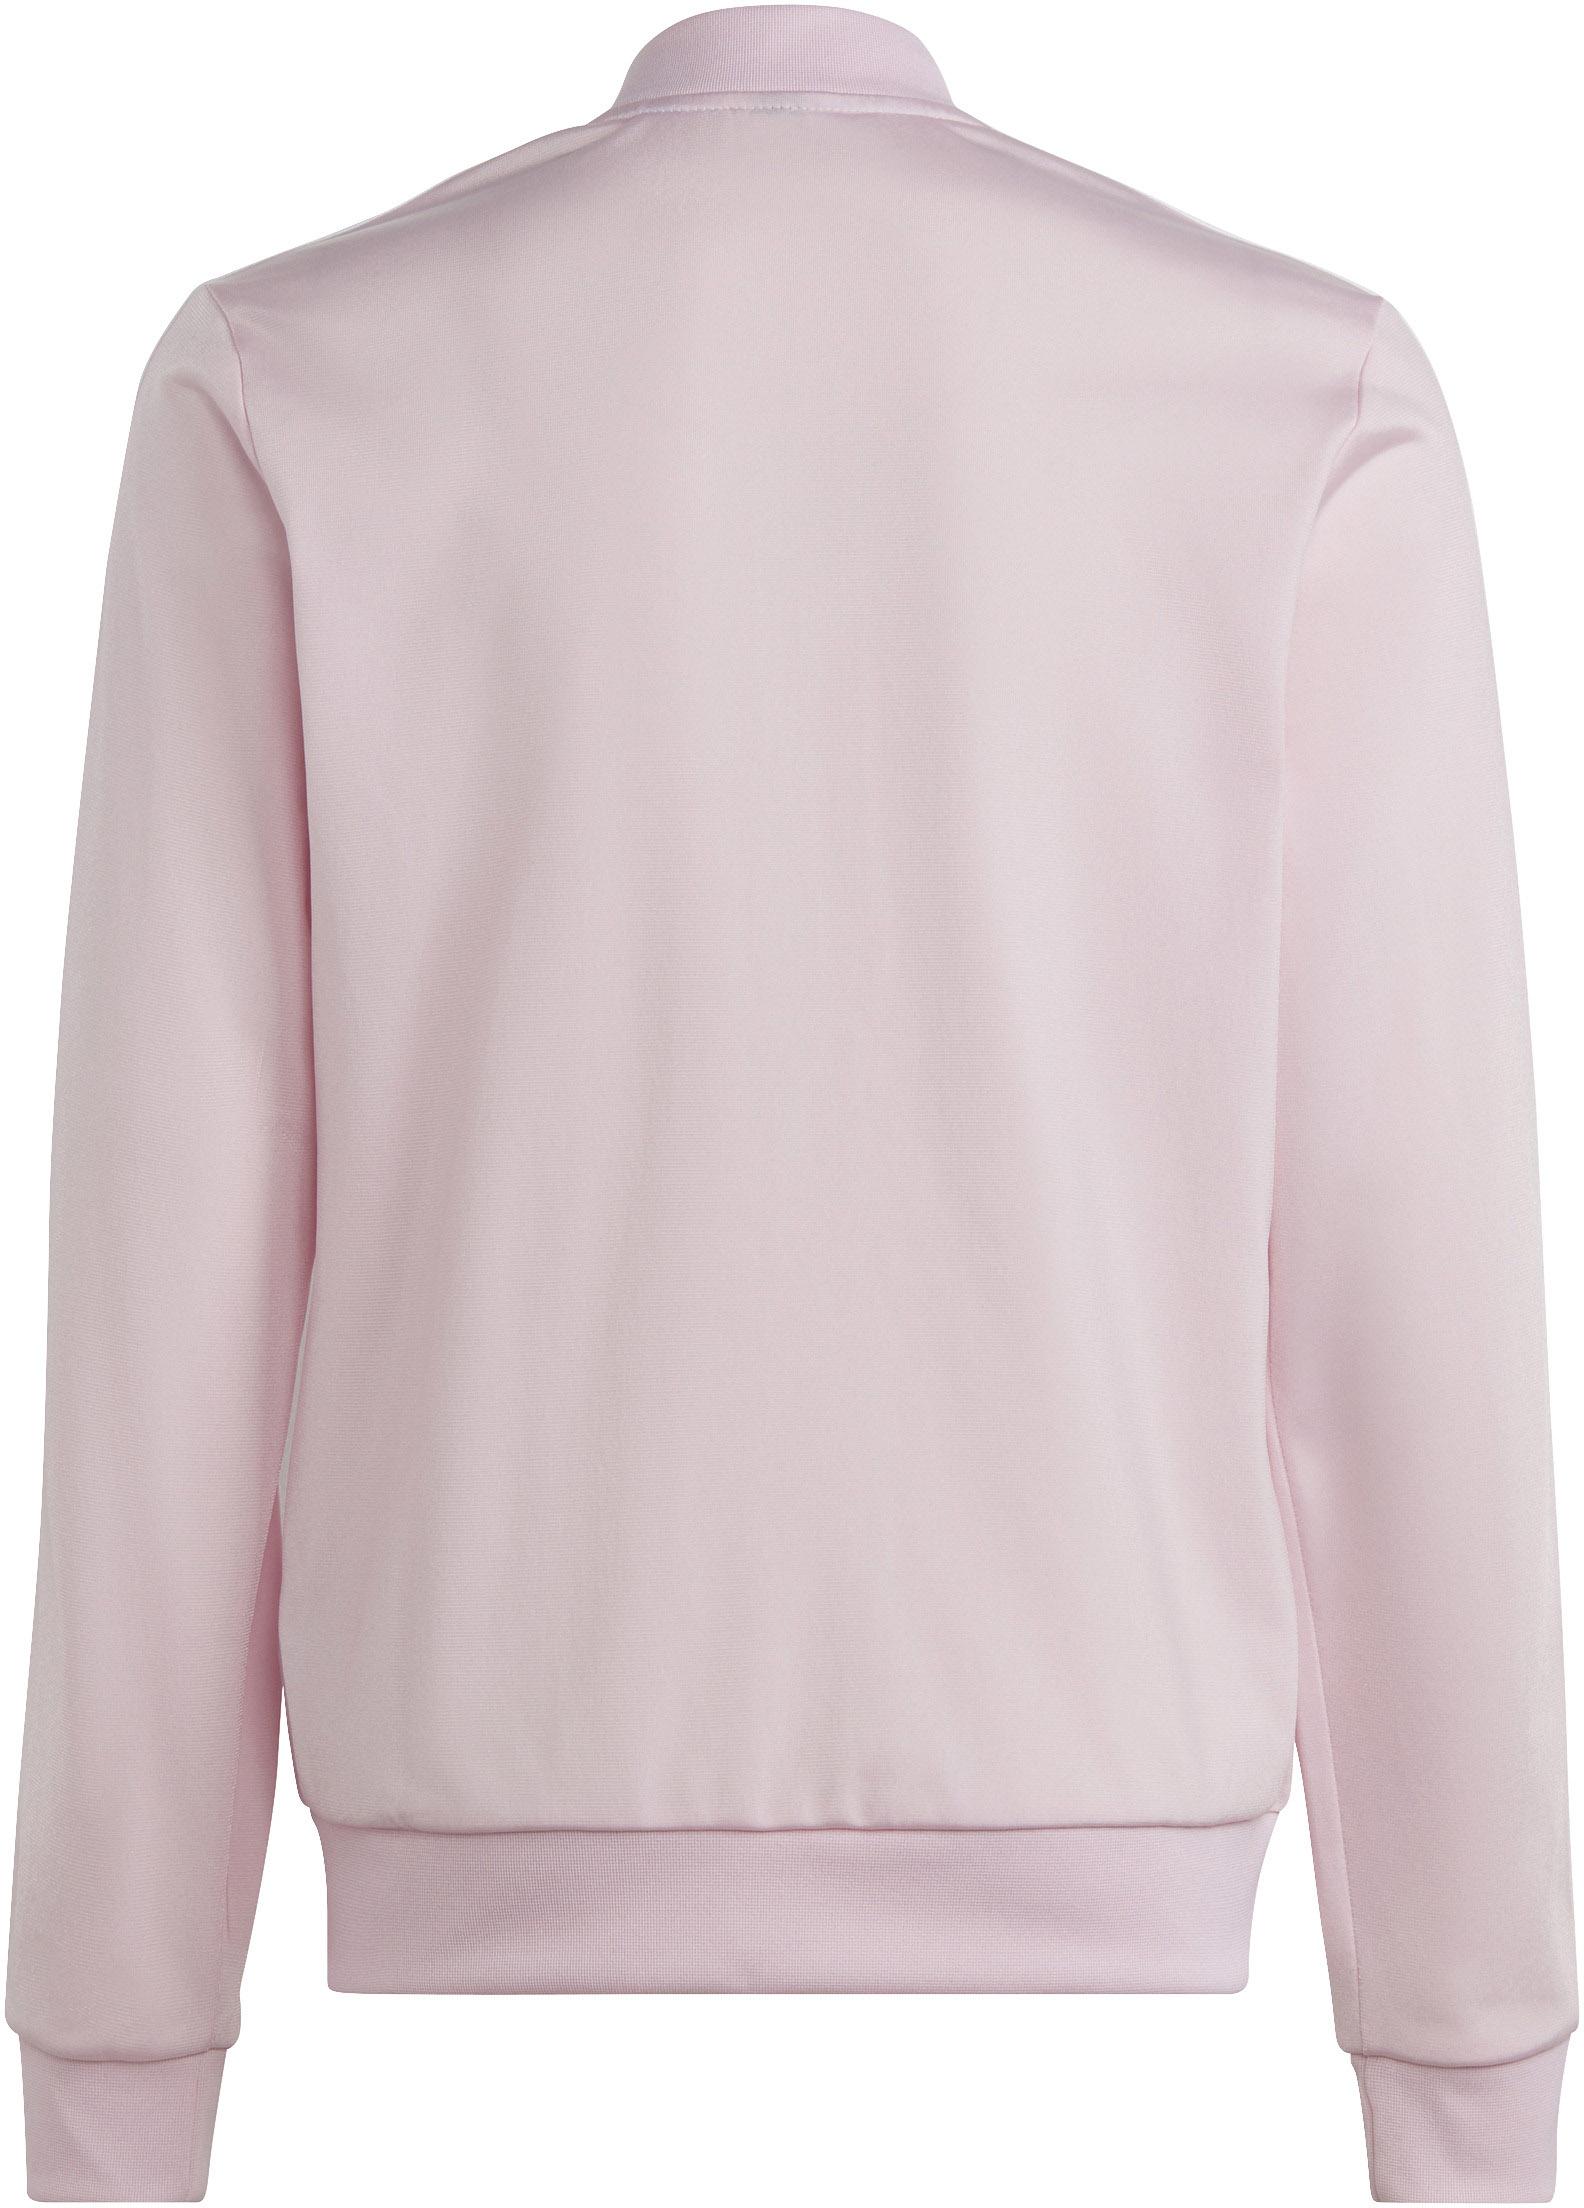 Adidas Trainingsanzug clear kaufen Online Mädchen SportScheck fuchsia-white pink-semi lucid von Shop im